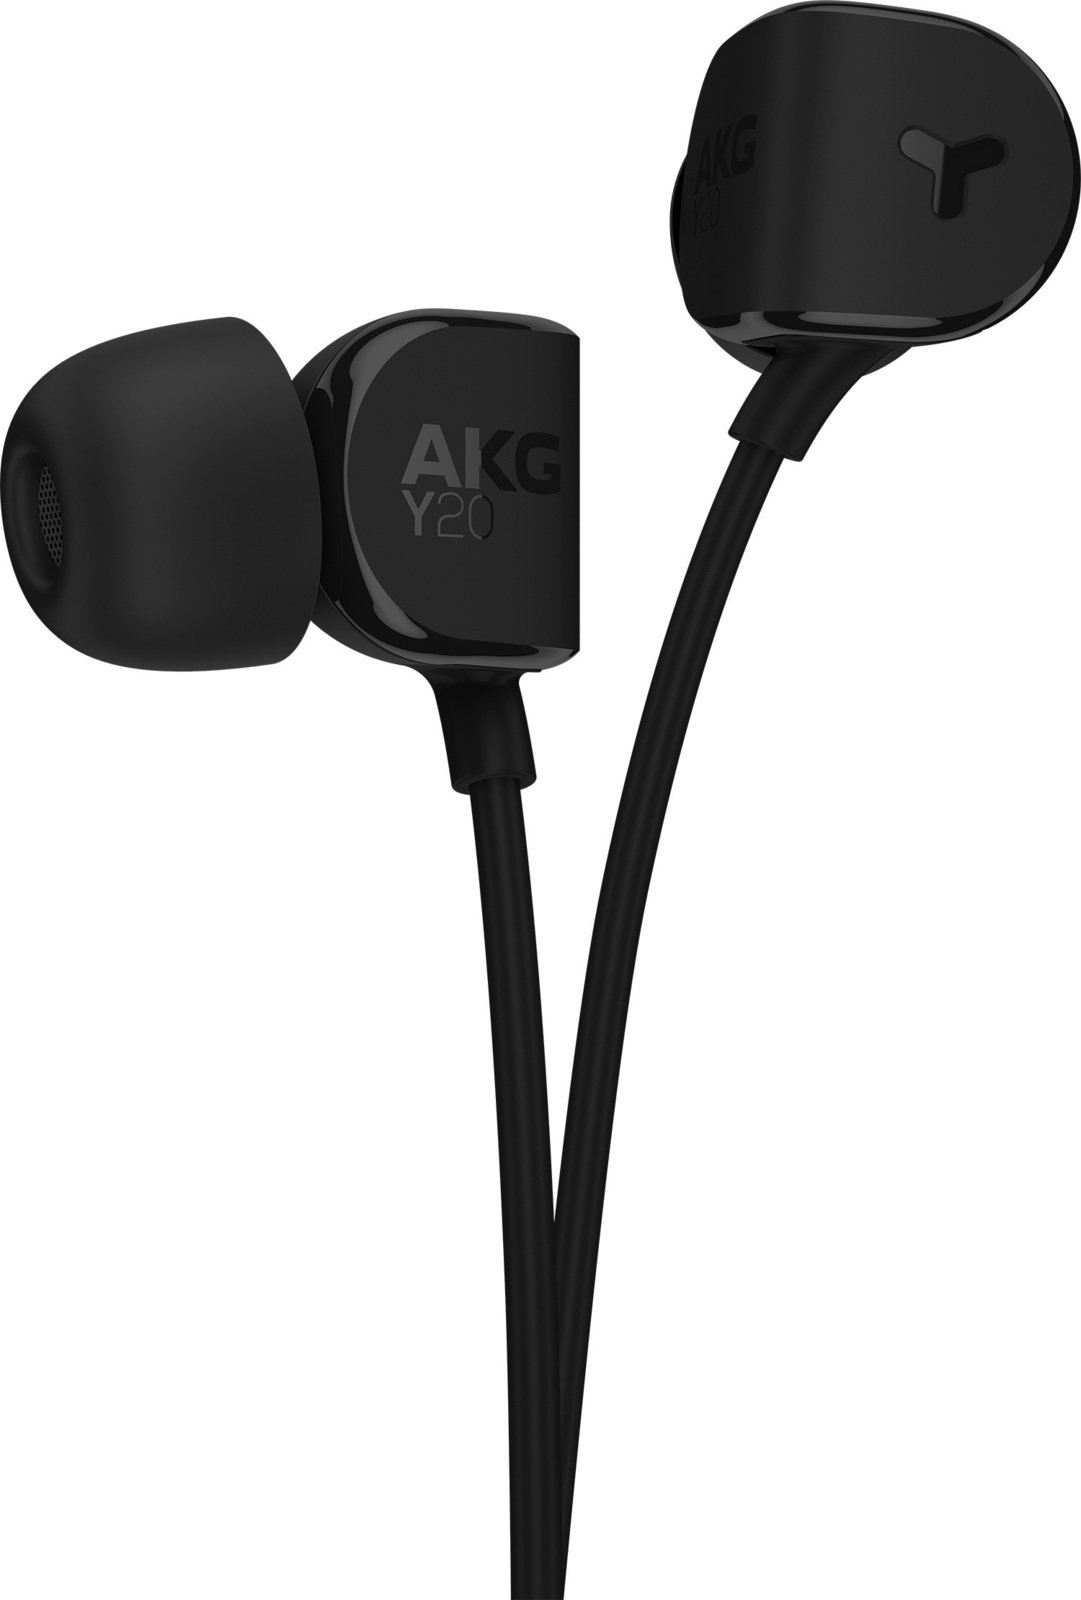 Auscultadores intra-auriculares AKG Y20 Black